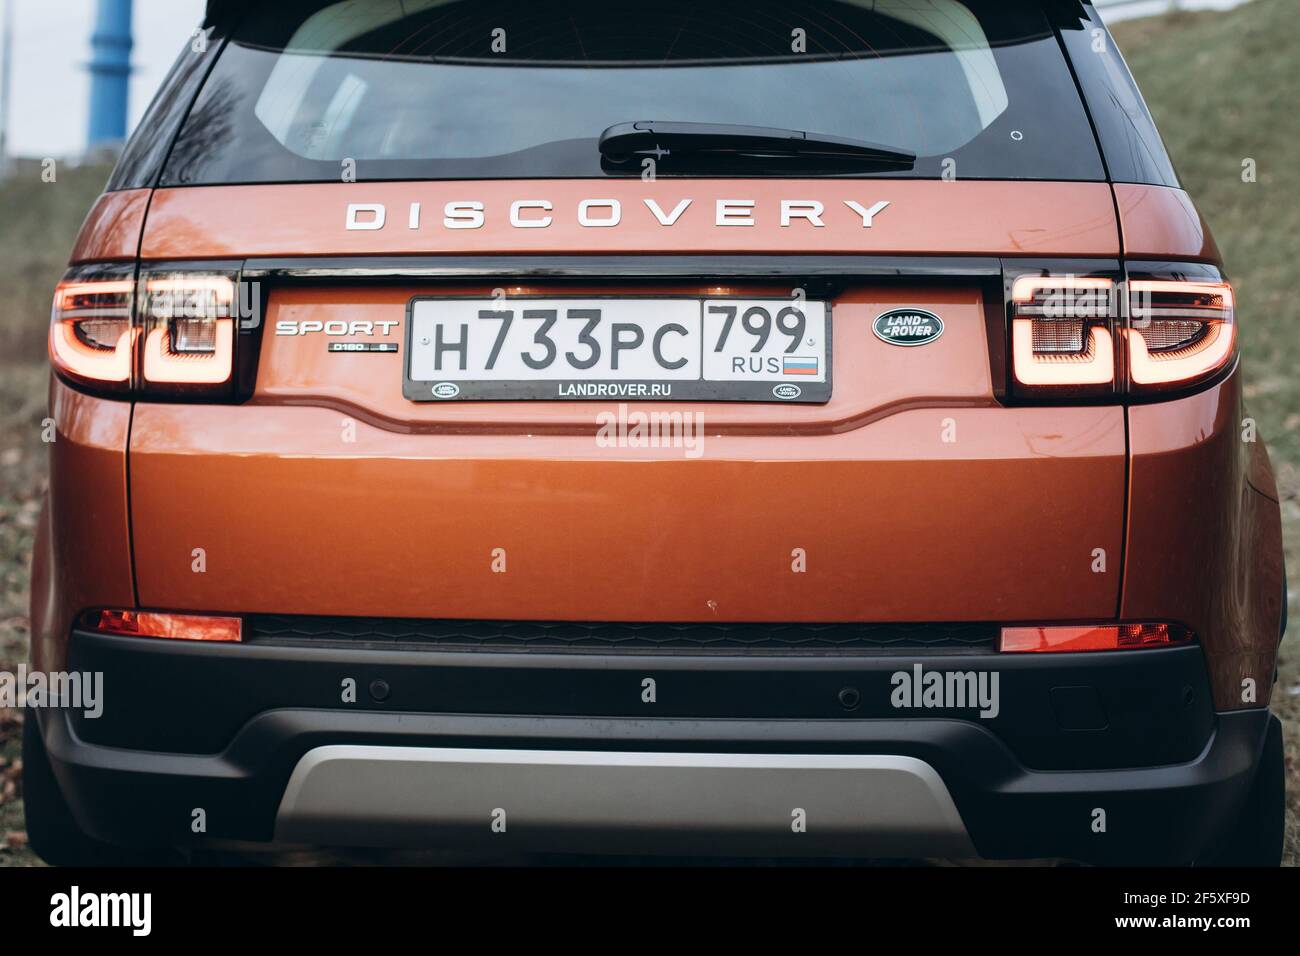 Moskau, Russland - 20. Dezember 2019: Rückansicht des neuen Premium england suv. Land Rover Discovery Sport im Wald geparkt. Orange Allradantrieb Auto steht auf dem Boden. Stockfoto